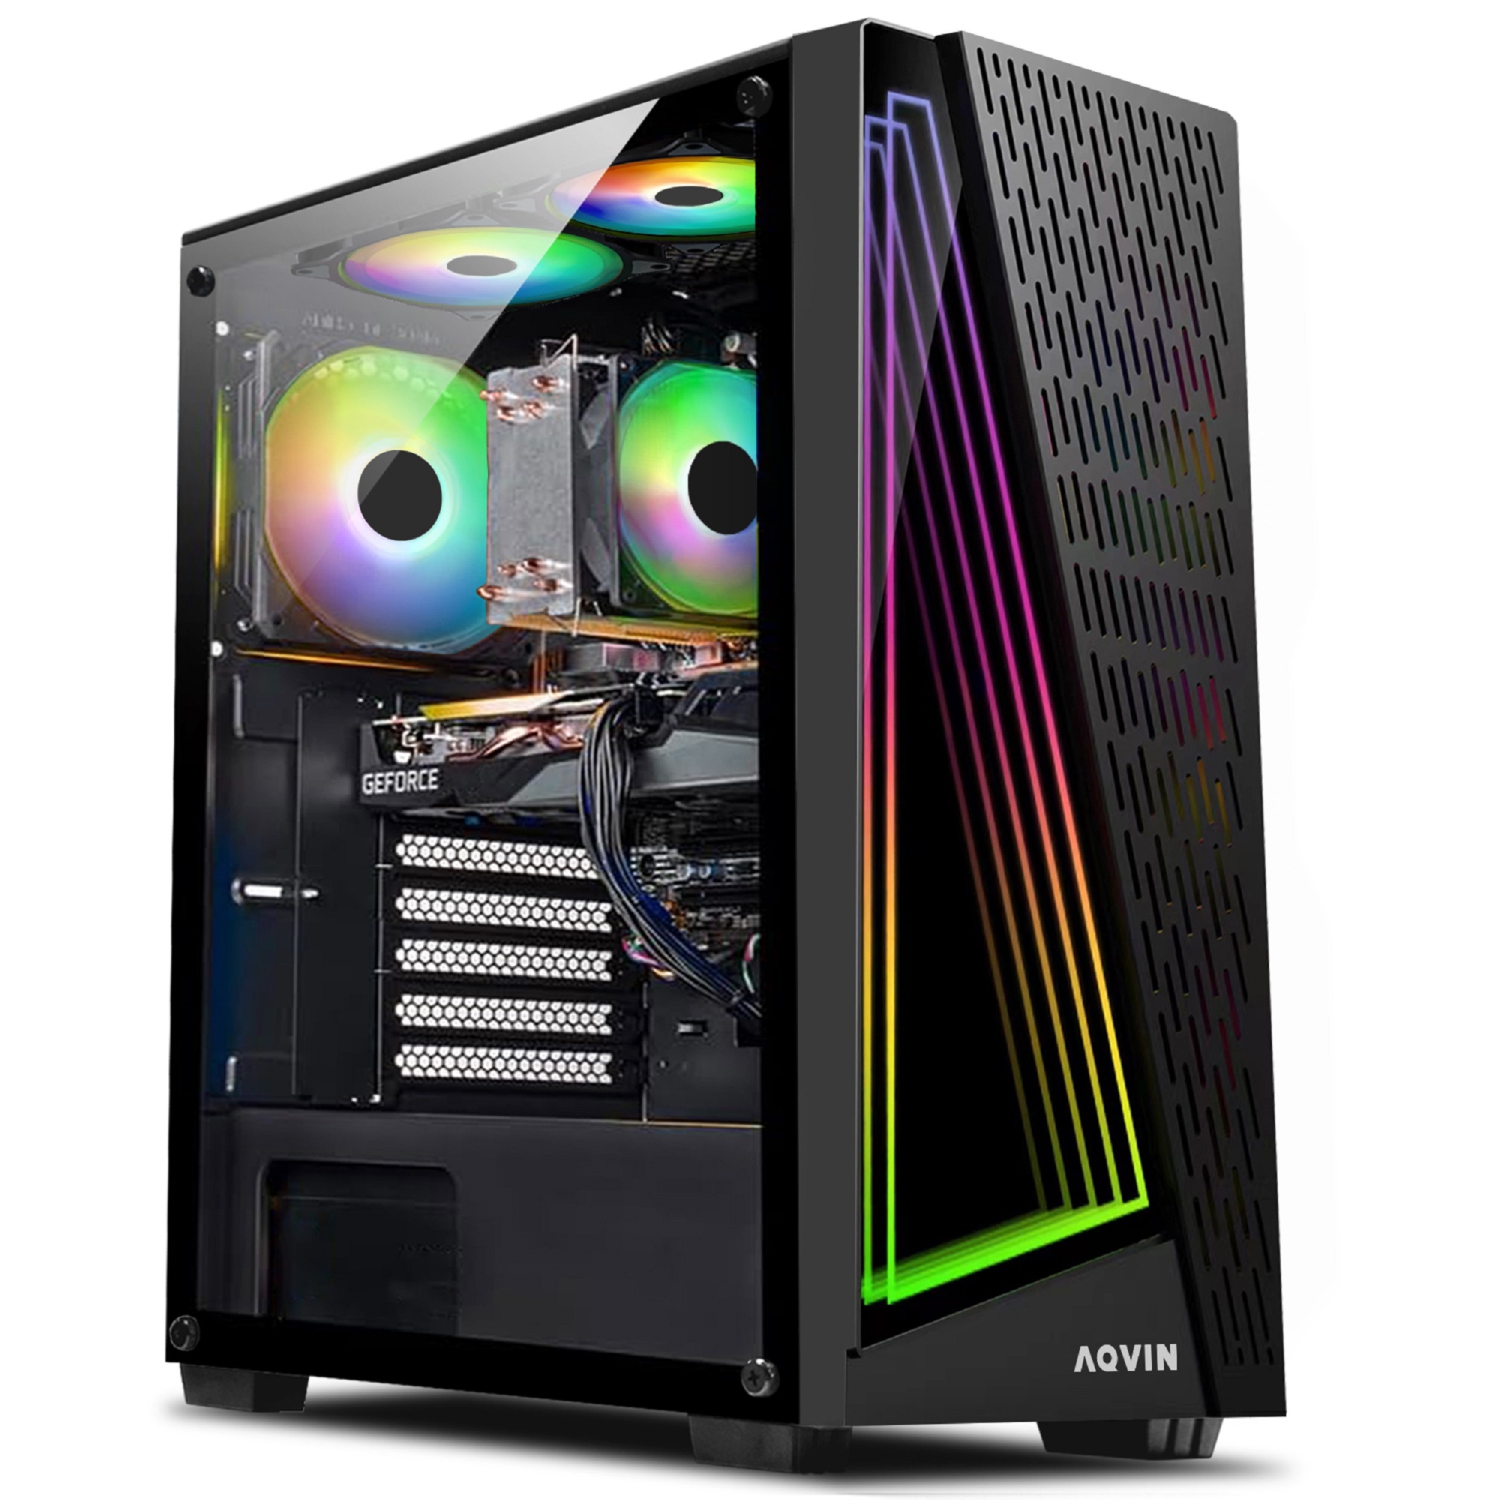 AQVIN Prebuilt Gaming PC Desktop Computer, AMD RX 580 8GB GPU, Intel Core i7 Processor, 32GB DDR4 RAM, 2000GB (Fast Boot) SSD Storage, WIN 10 Pro, Gaming Keyboard and Mouse (AQ50)